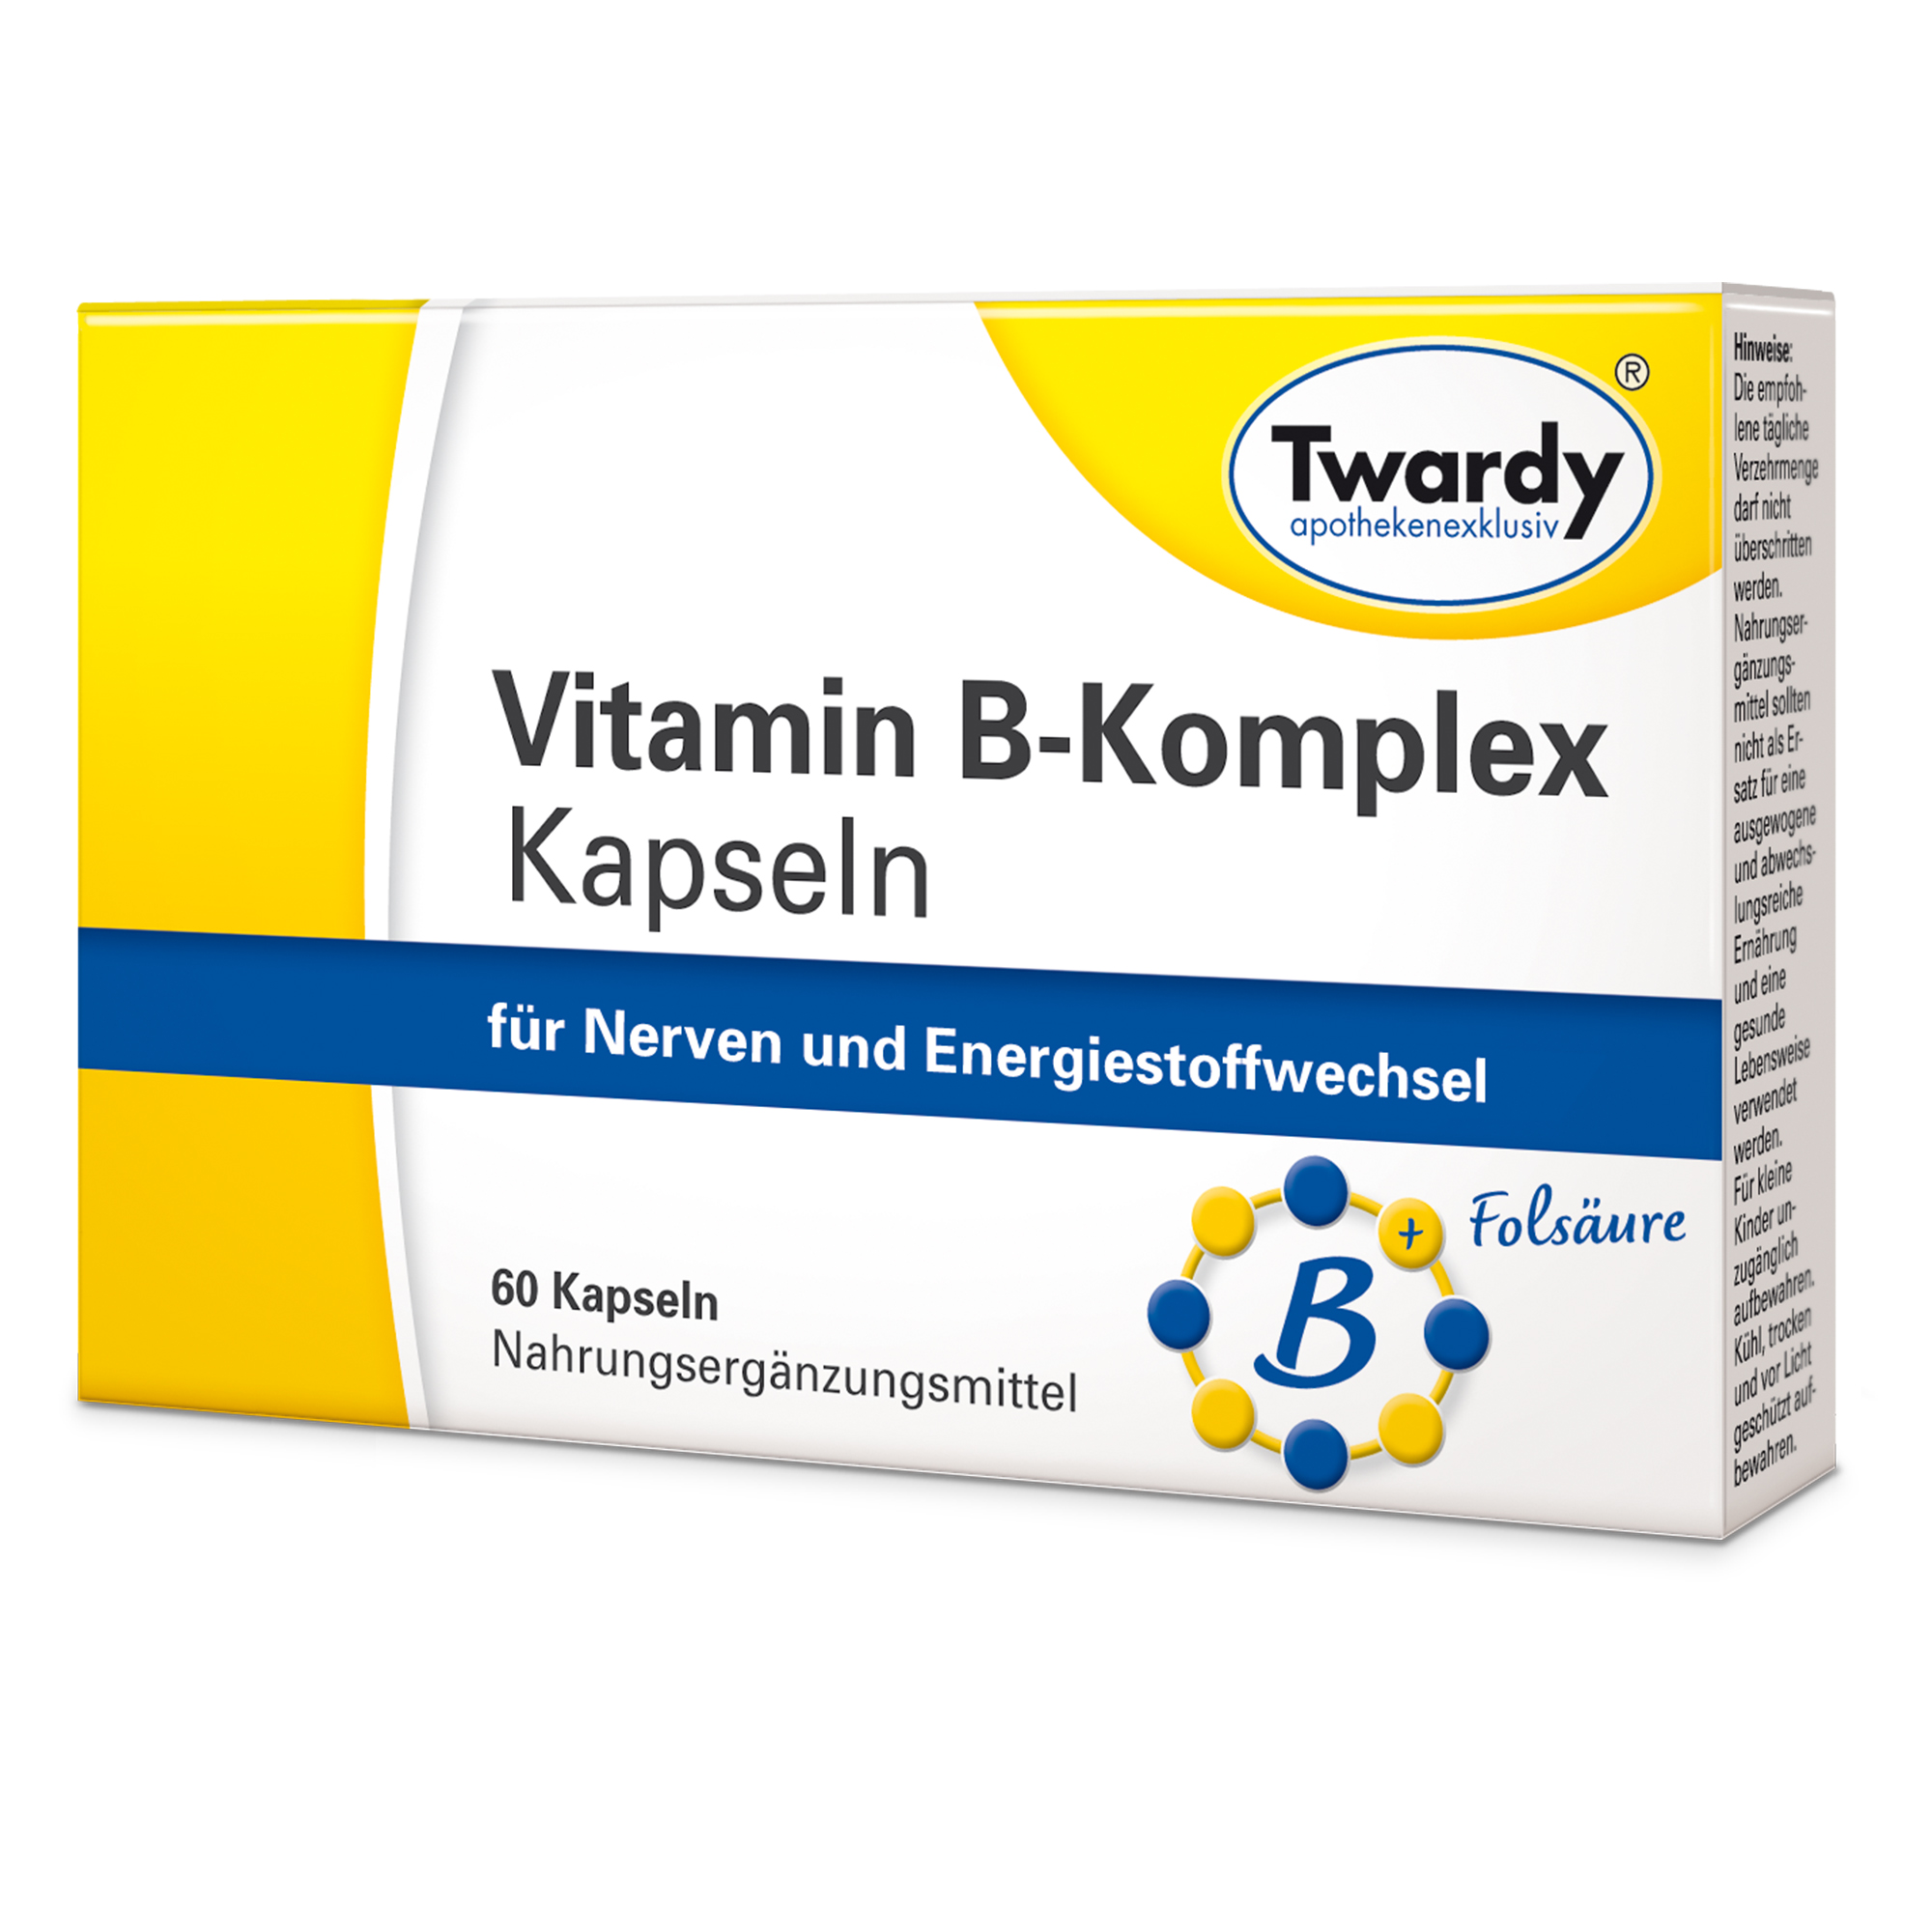 Vitamin B-Komplex Kapseln – PZN 03712965